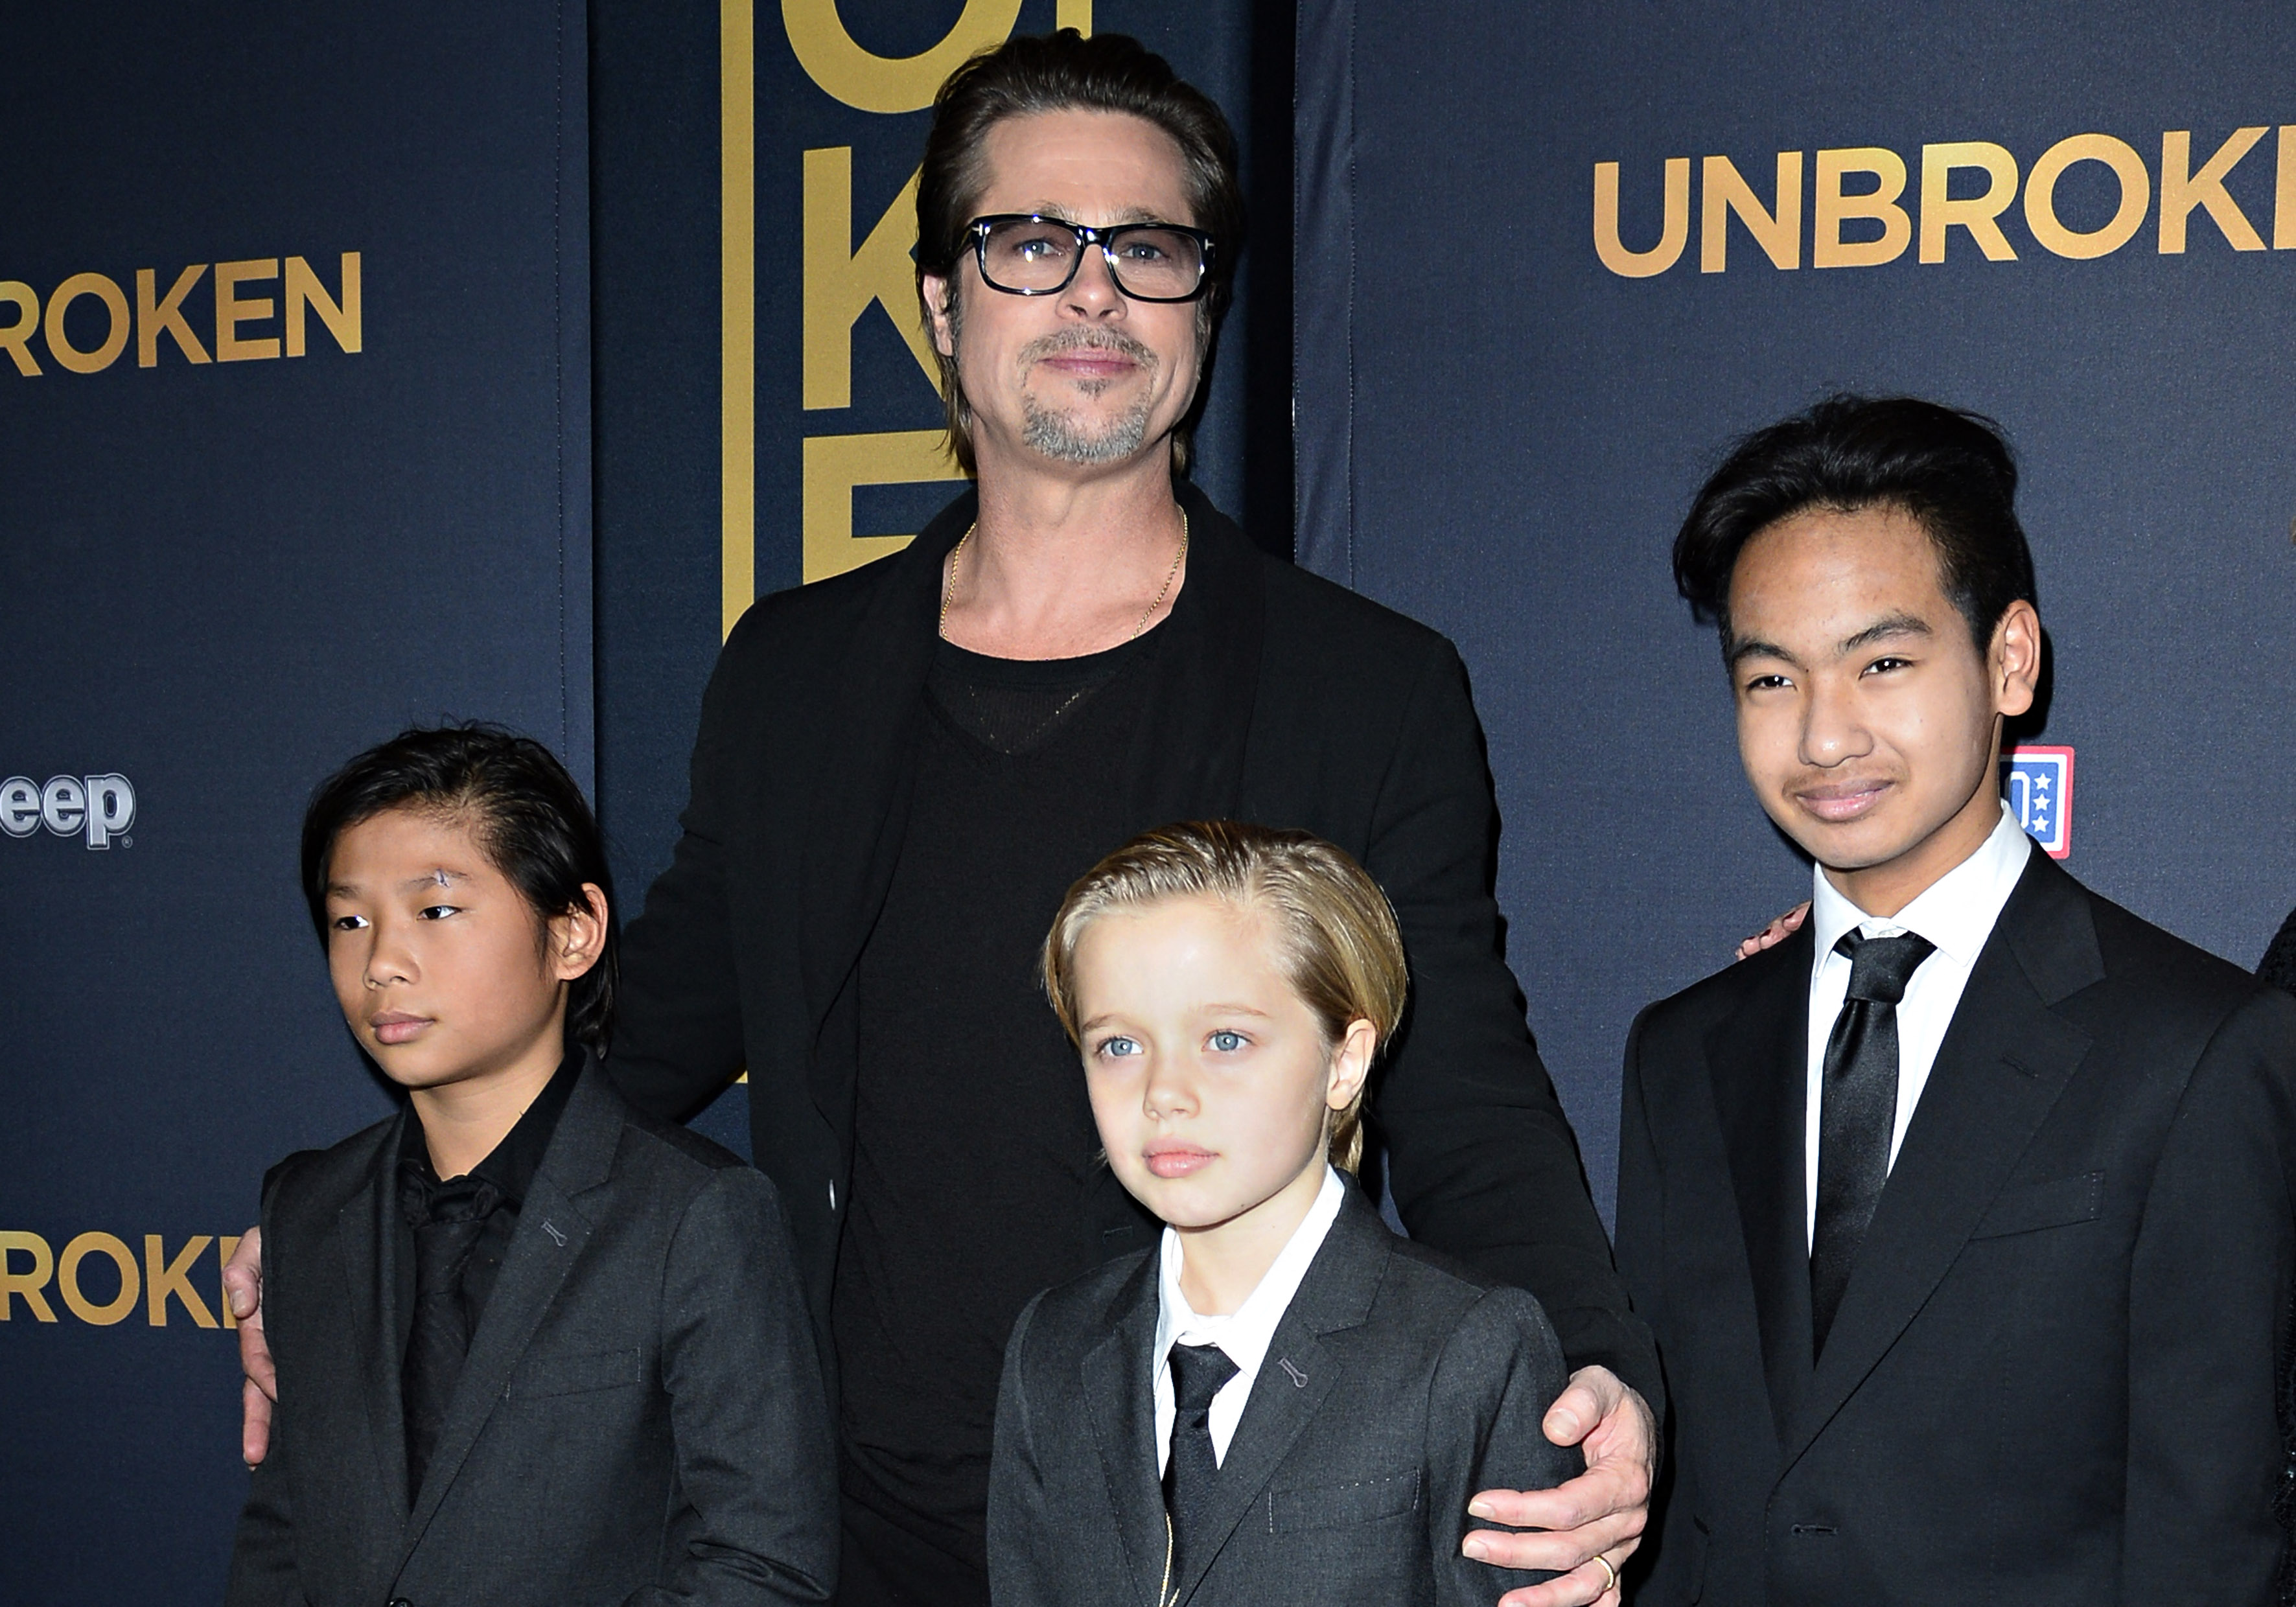 Brad Pitt mit seinen Kindern Pax, Shiloh und Maddox bei der Premiere von "Unbroken" in Los Angeles im Jahr 2014 | Quelle: Getty Images